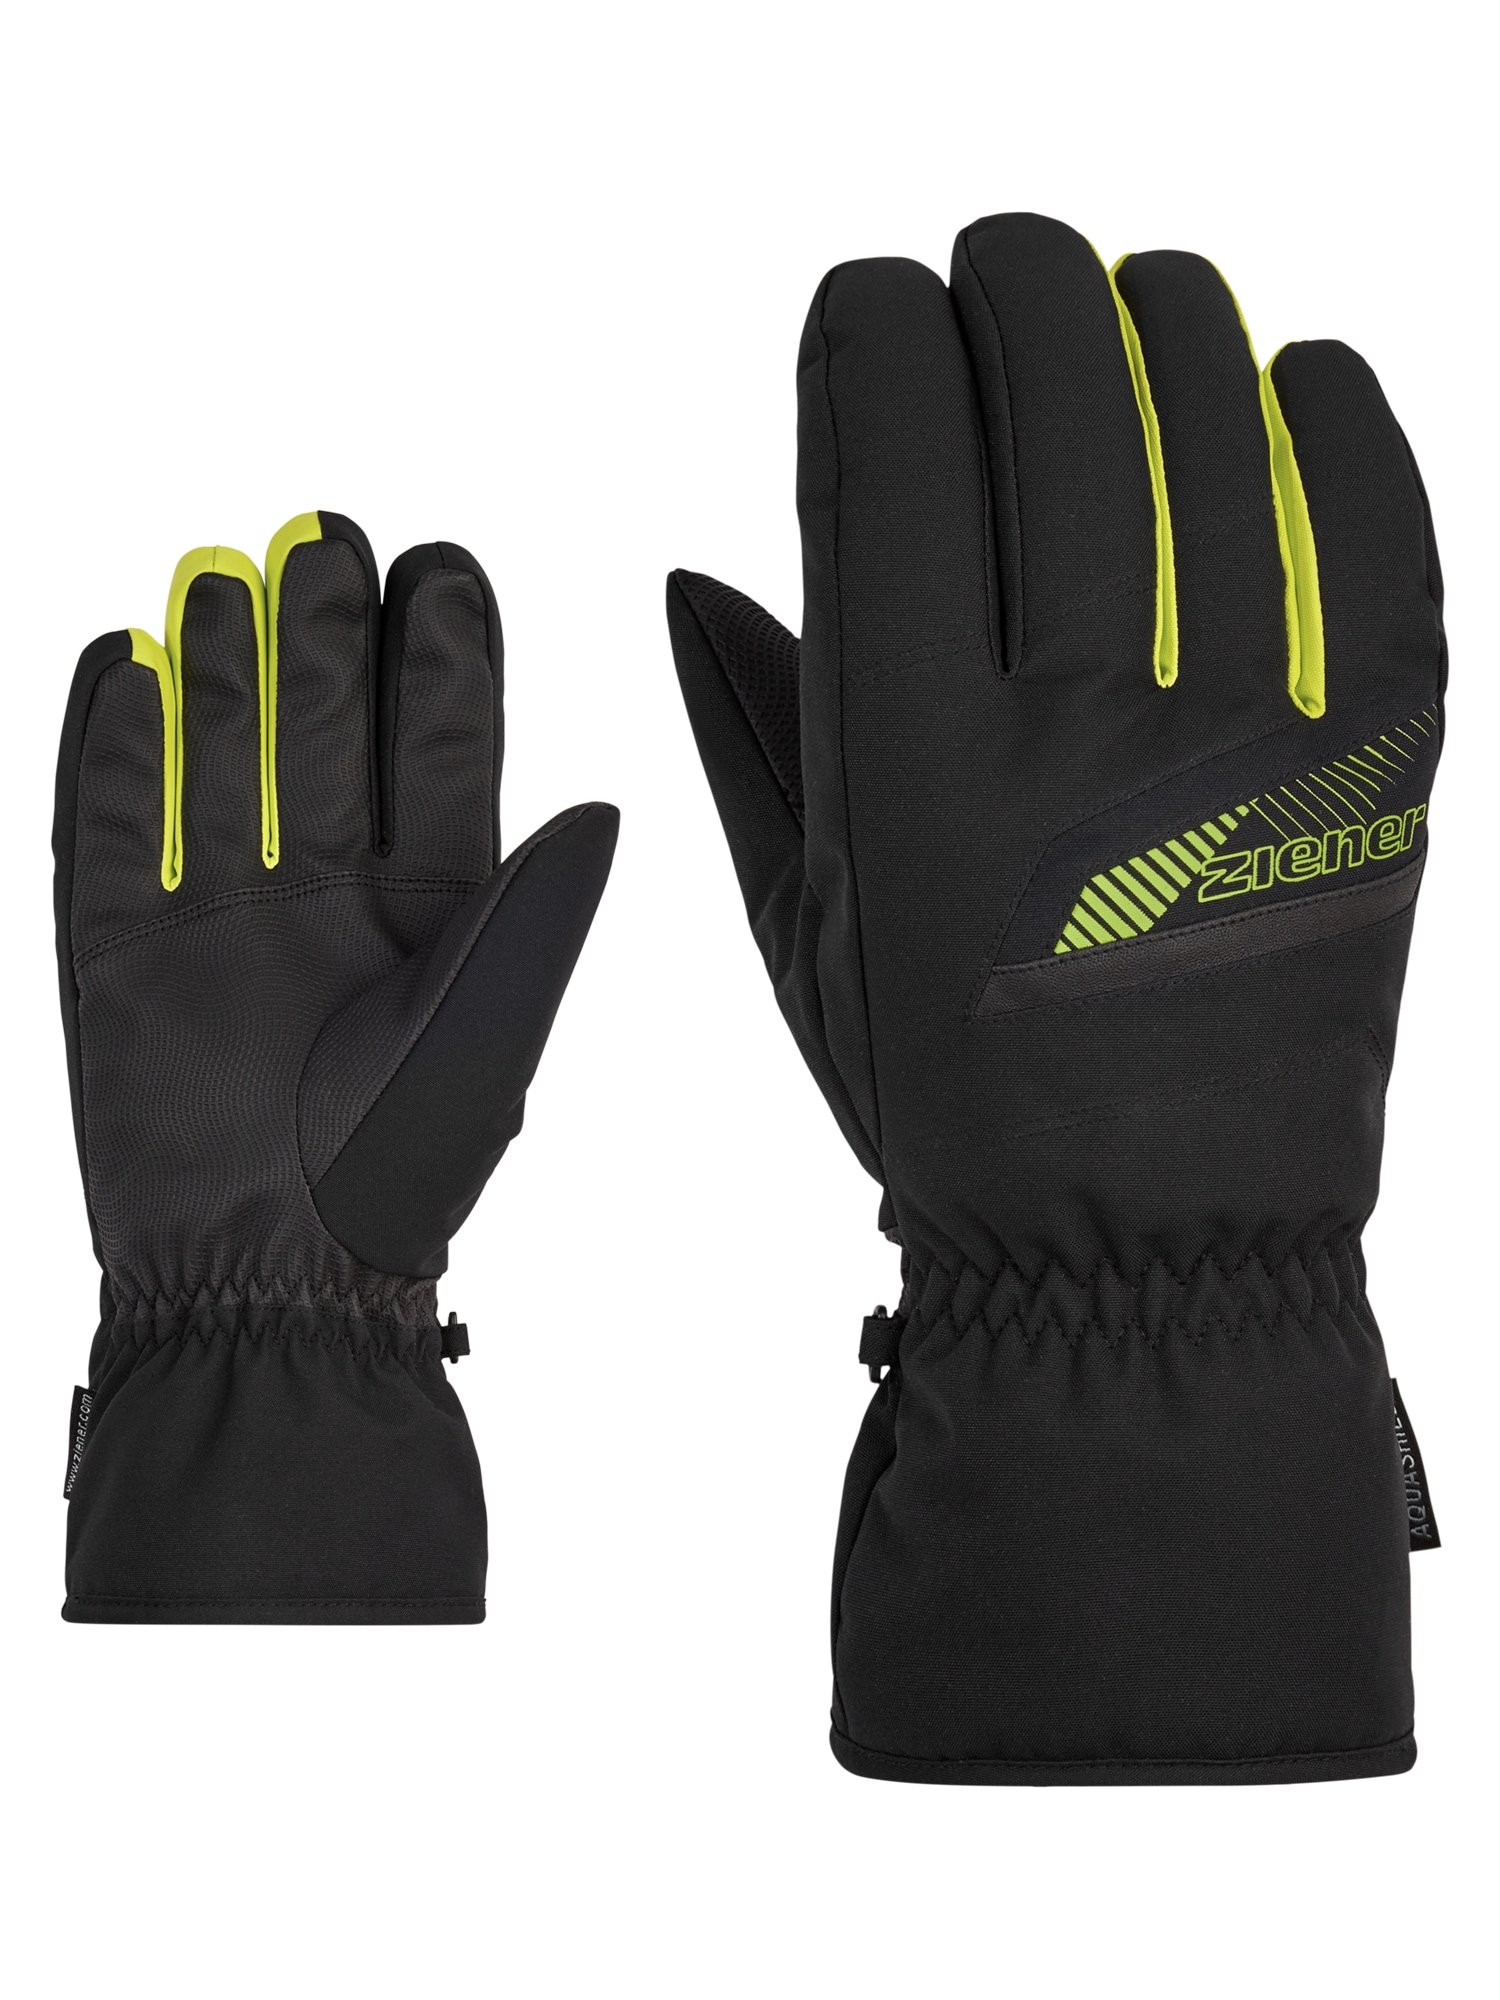 Jetzt Ski Handschuhe für den shoppen | Sport OTTO online